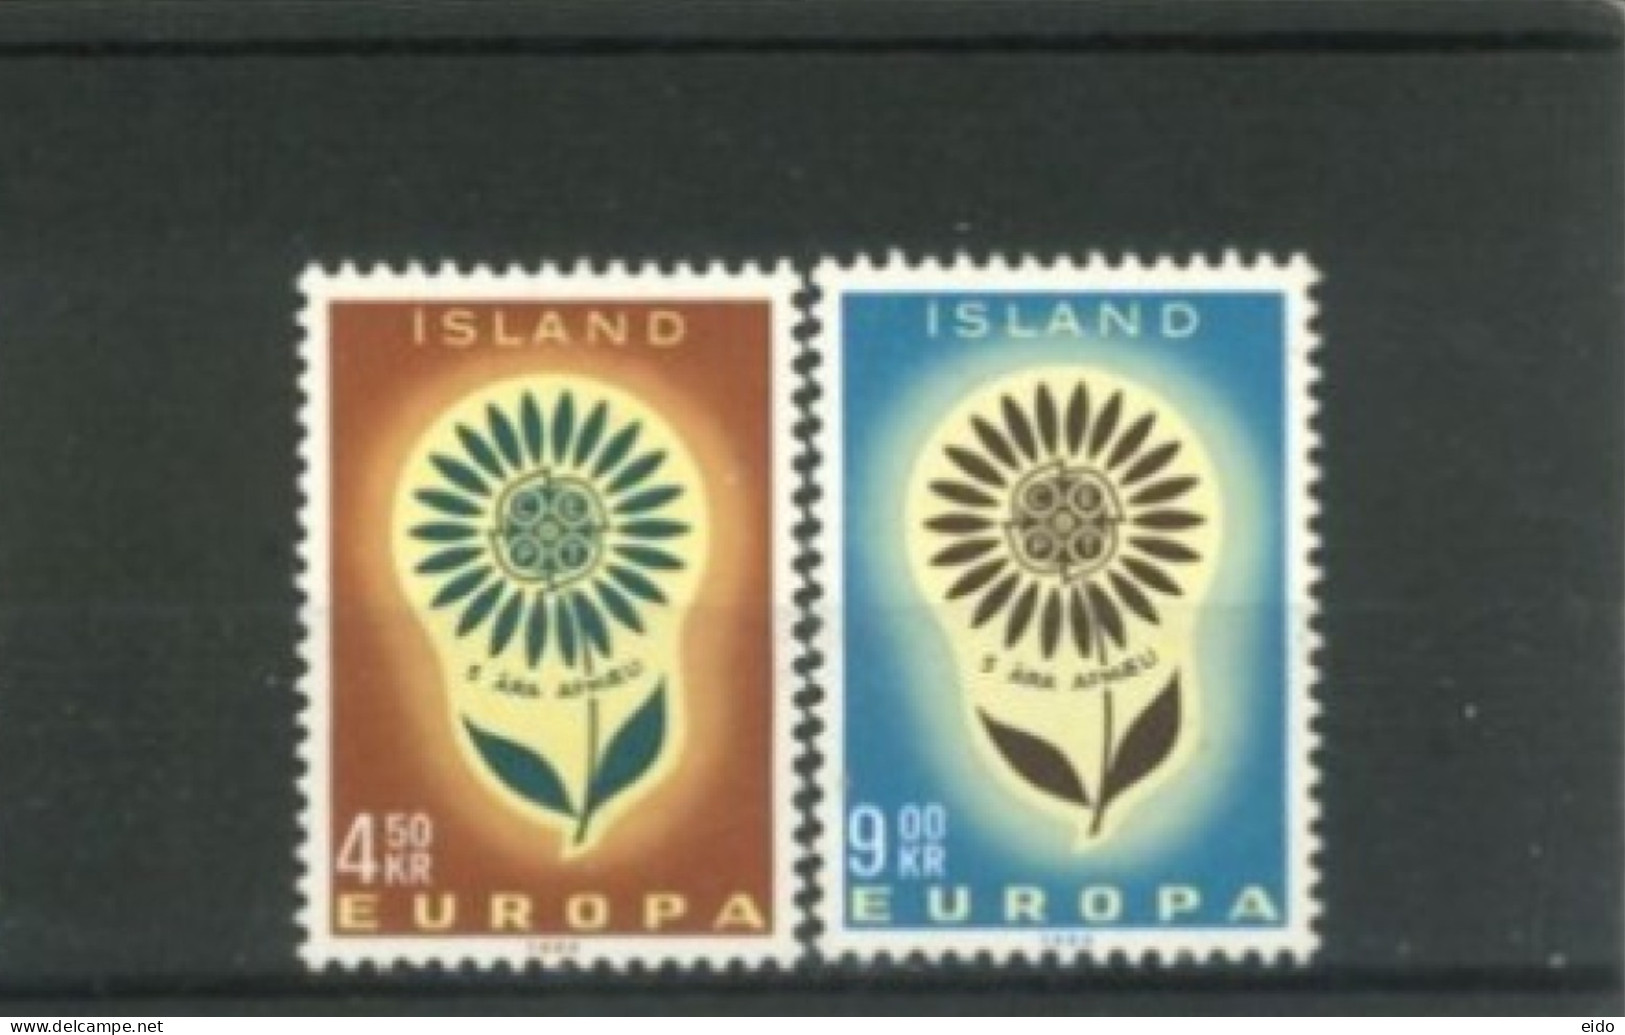 ISLAND -  1964, EUROPA STAMPS COMPLETE SET OF 2,  UMM (**). - Ongebruikt